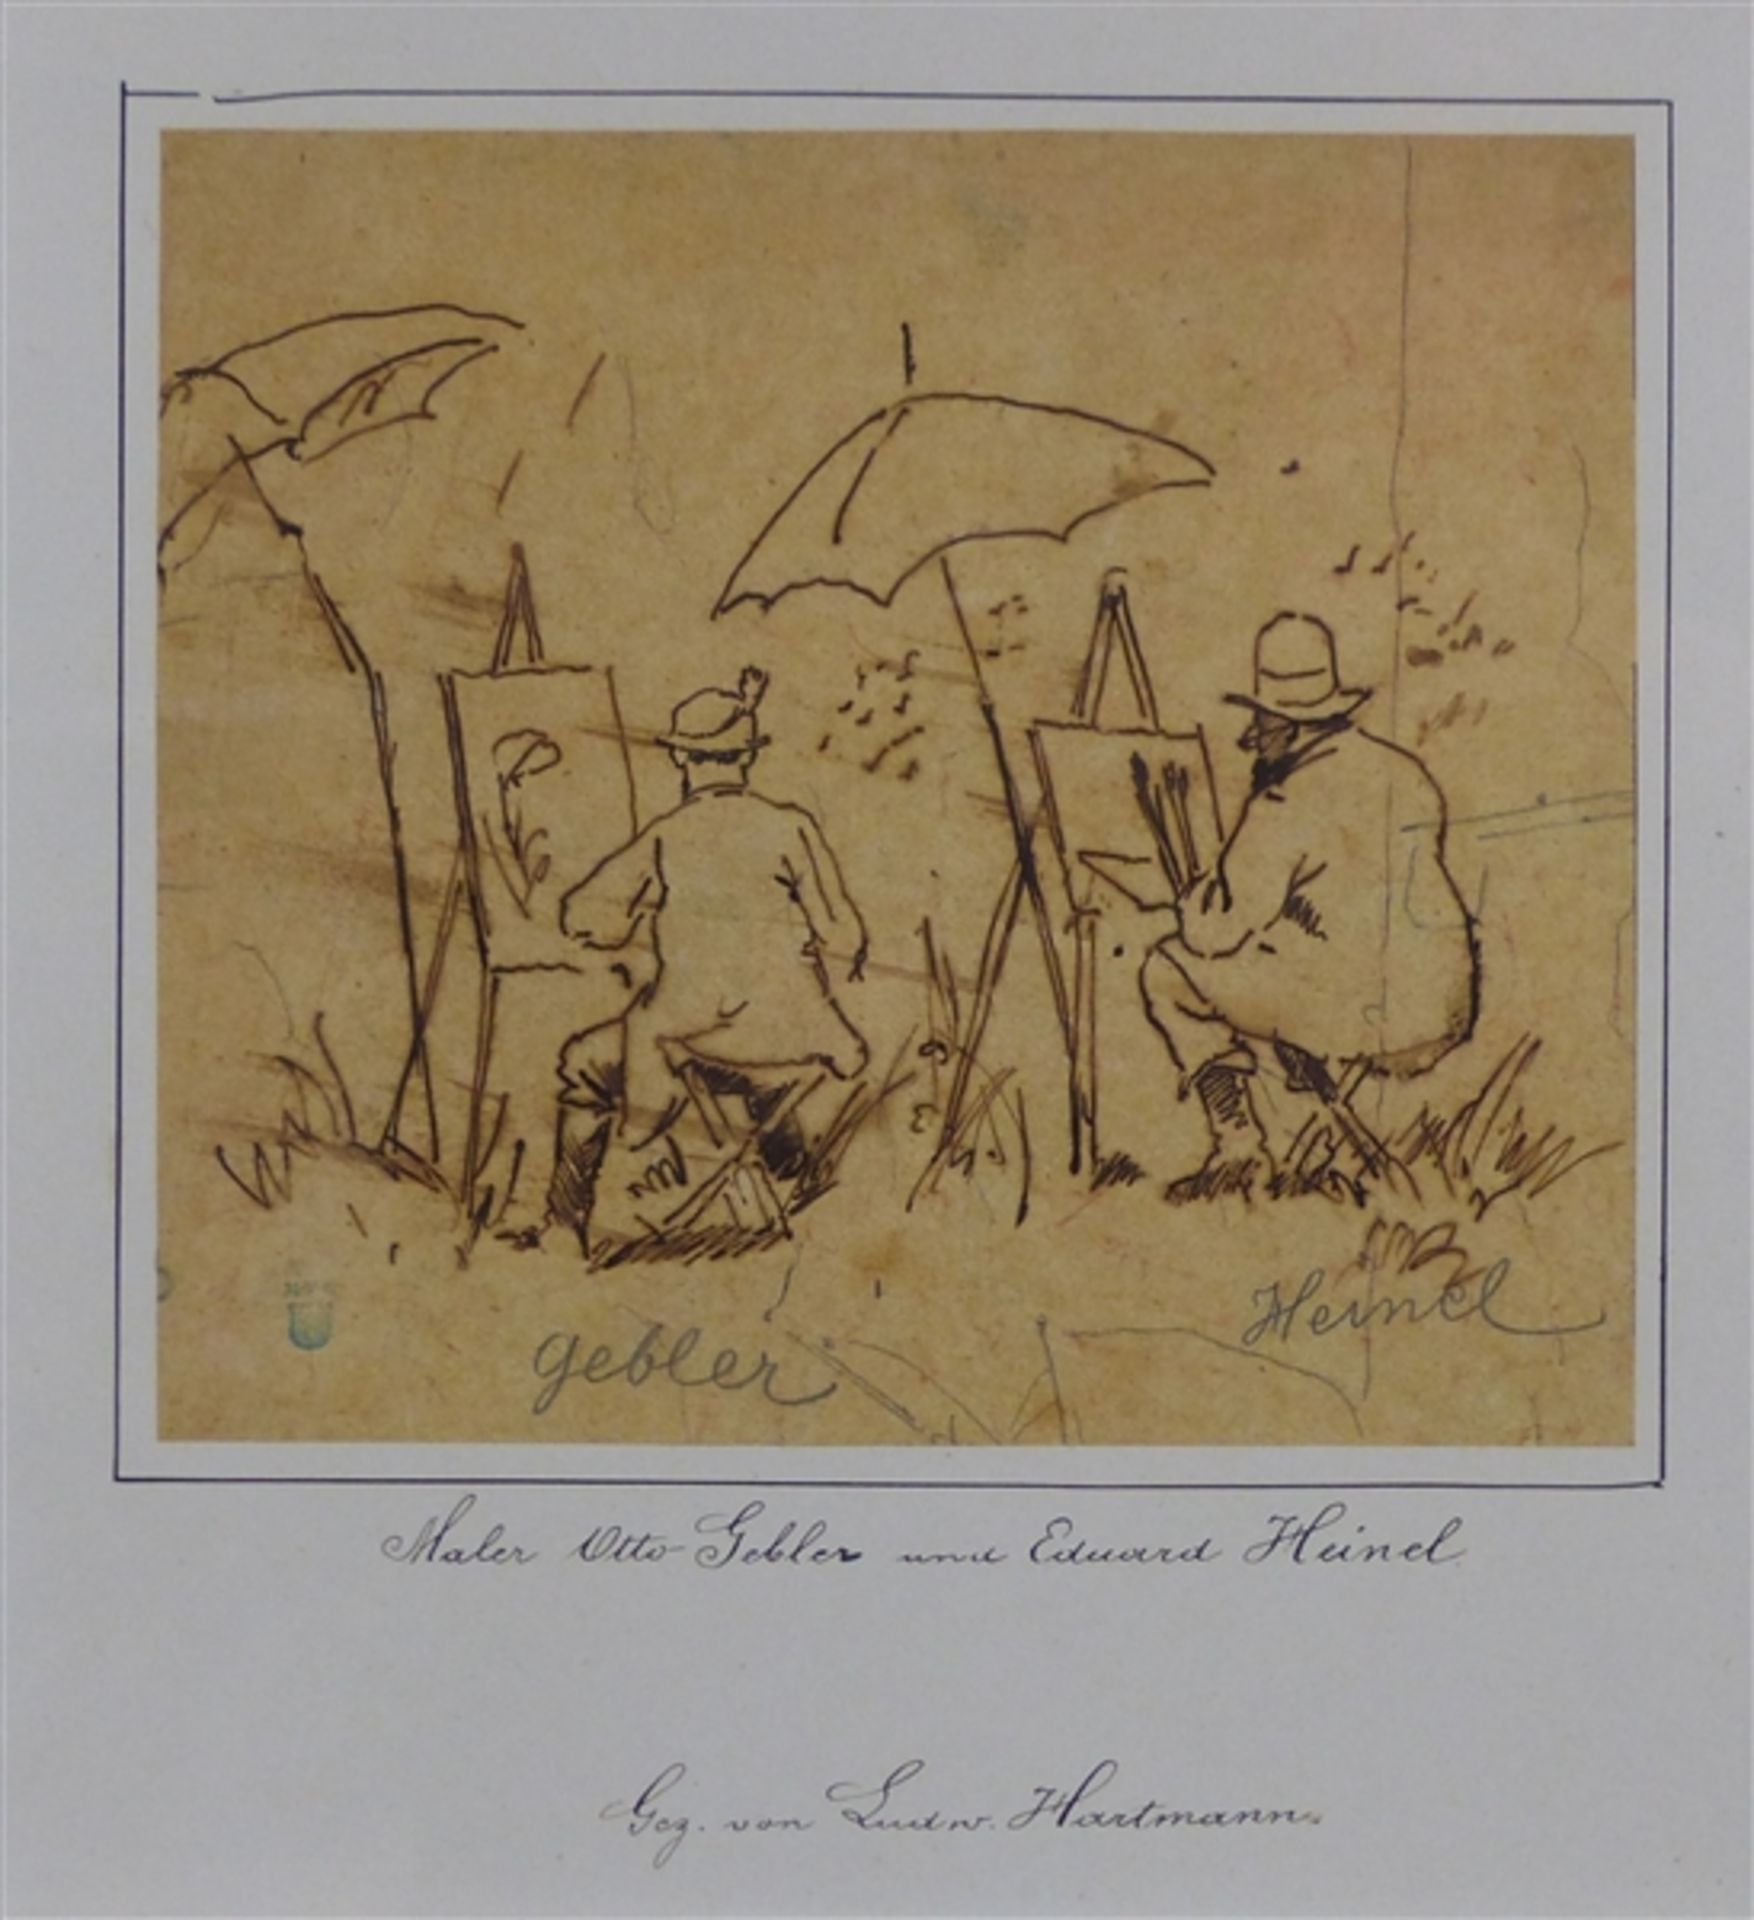 Hartmann, Ludwig 1835 - 1902, Tusche auf Papier, Darstellung der Maler Otto Gebler und Eduard